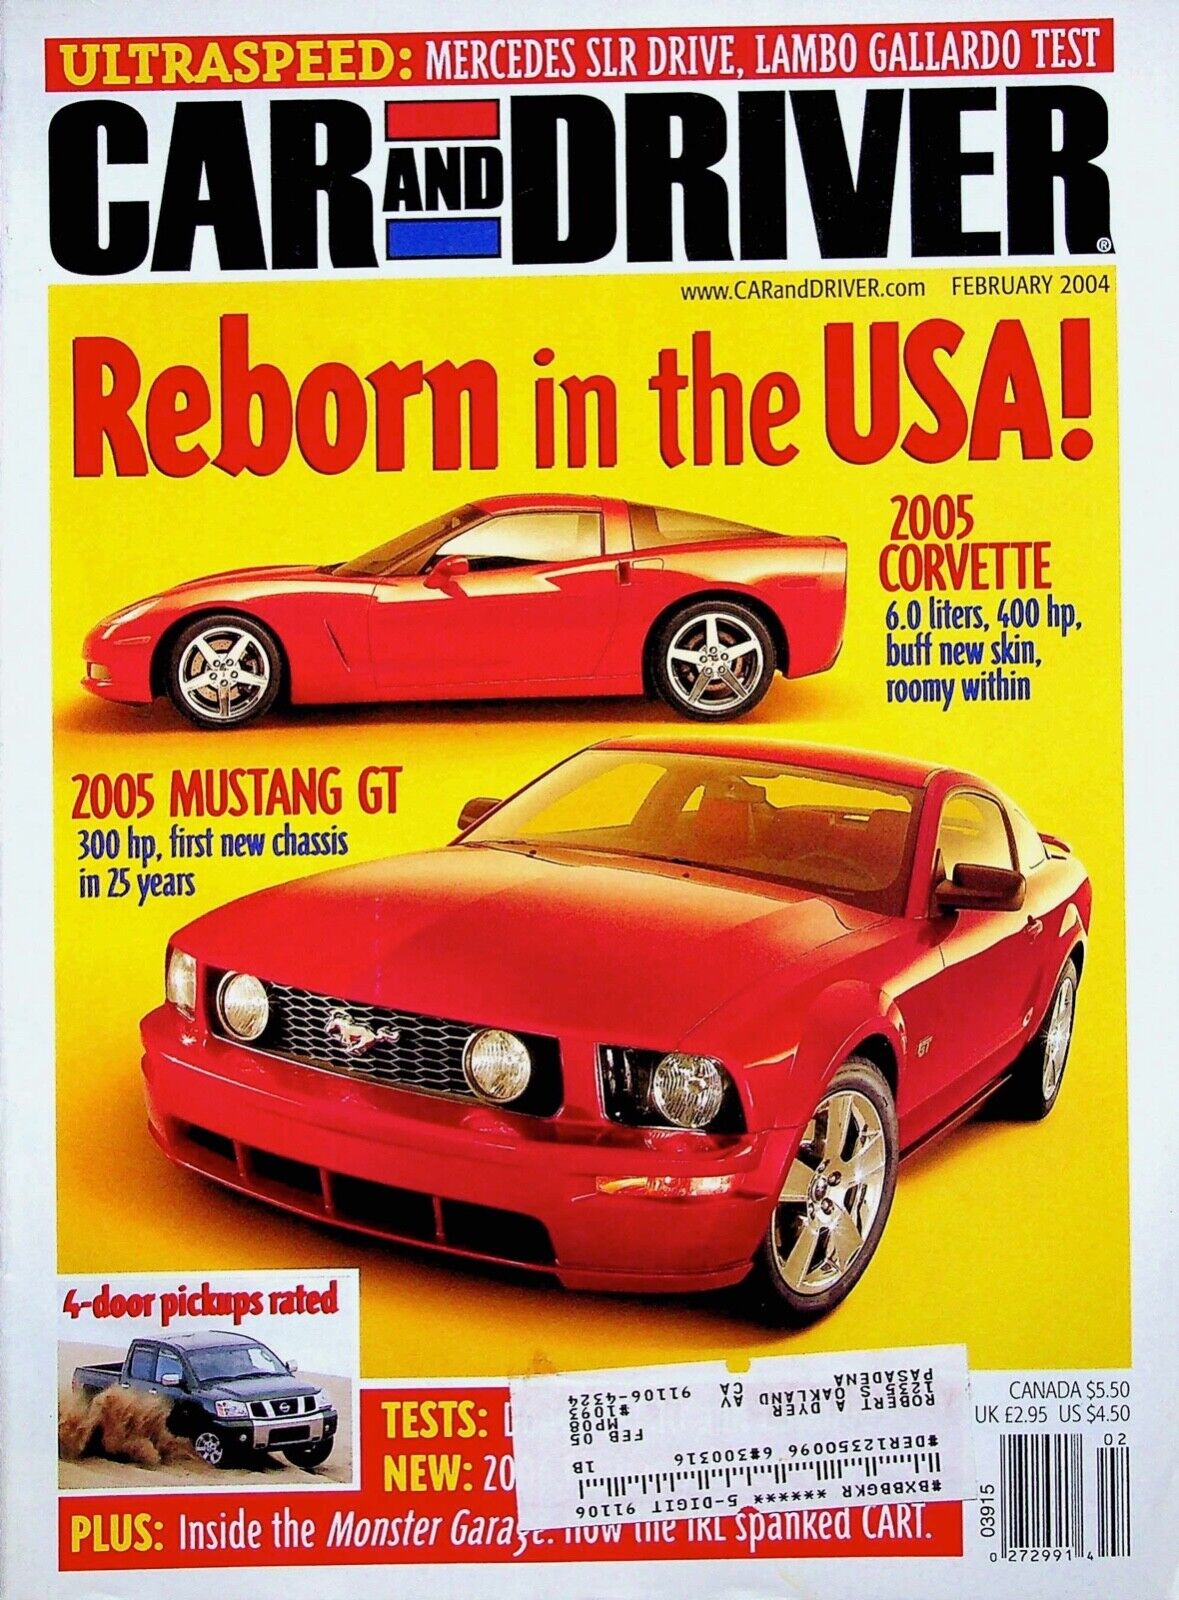 REBORN IN THE USA. 2005 CORVETTE 6.0 - CAR AND DRIVER MAGAZINE, FEBRUARY 2004